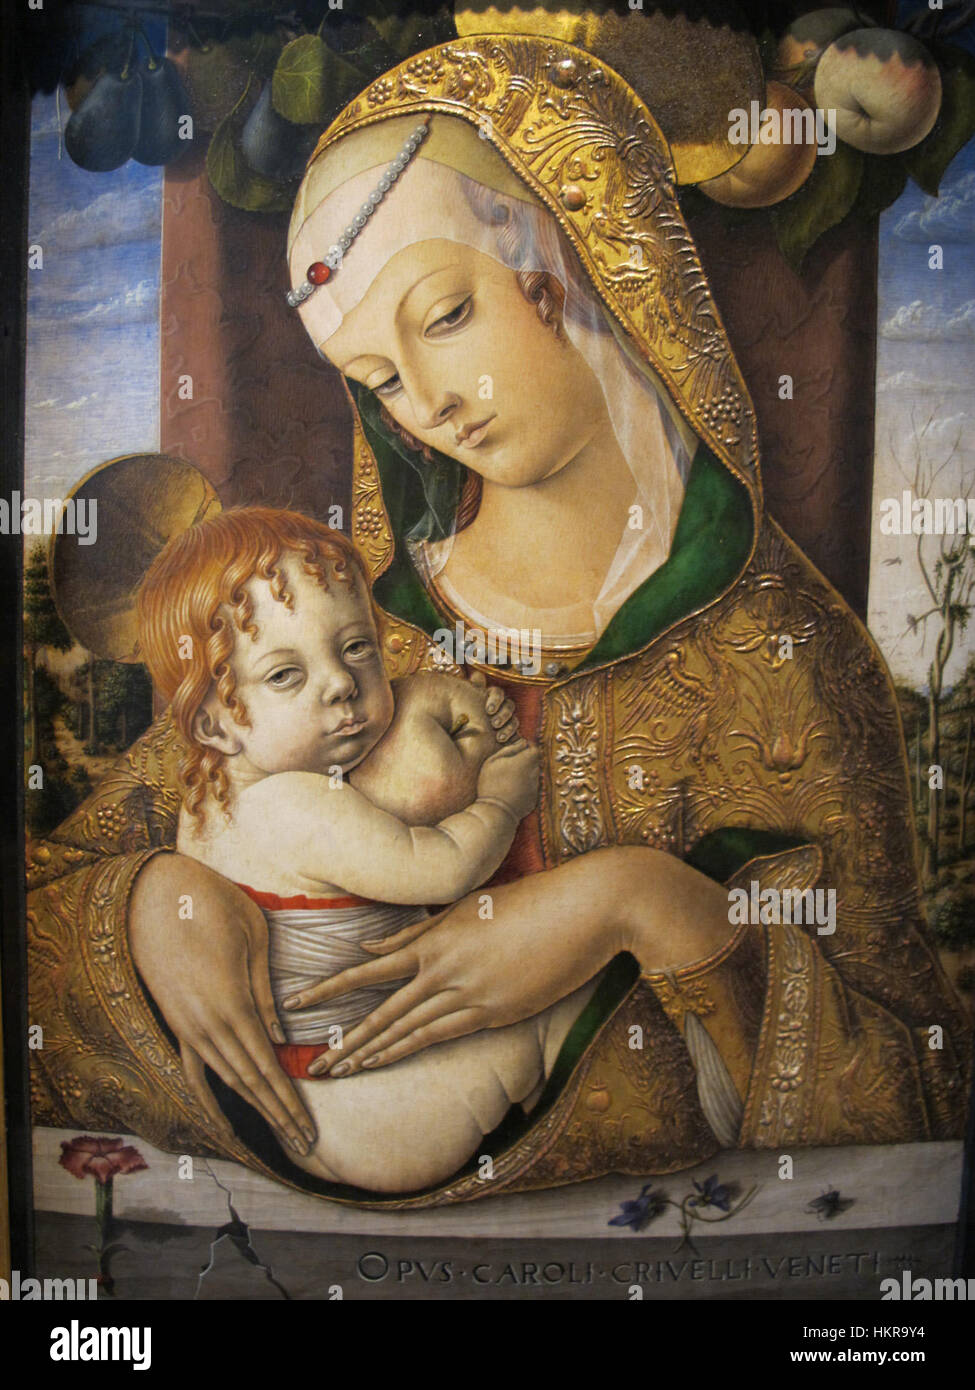 Carlo crivelli, madonna col bambino, V&A, 1480 ca. 02 Stock Photo - Alamy